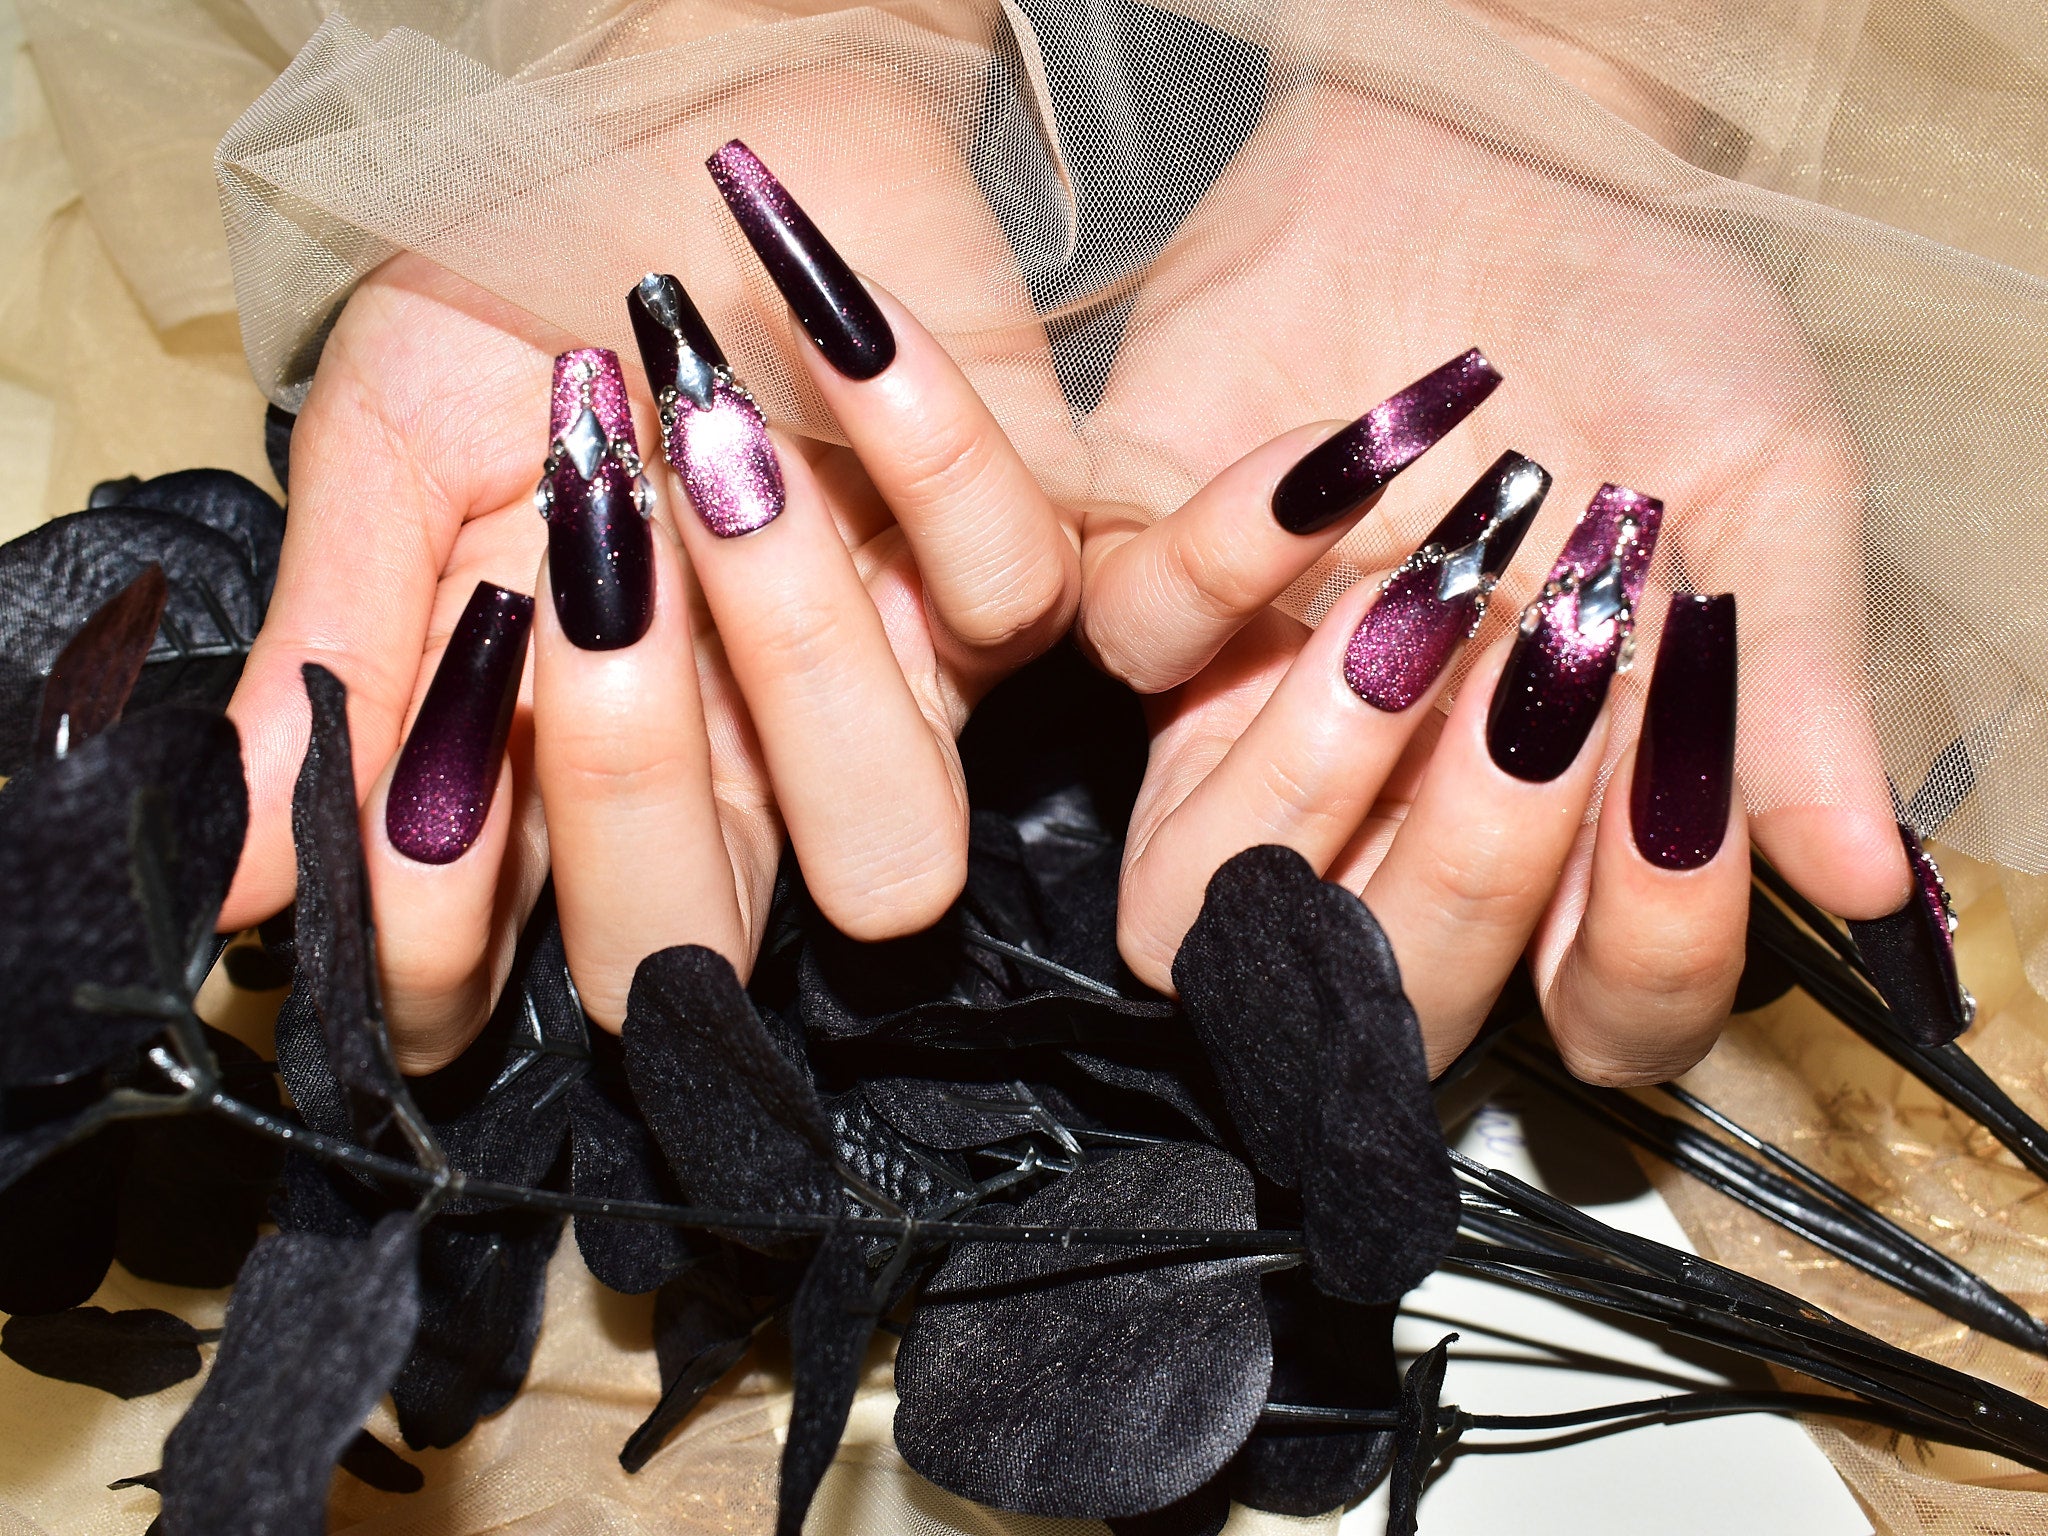 handmade press on nails, princess nail, purple cat eye nails, coffin shaped nails, monoschic nails